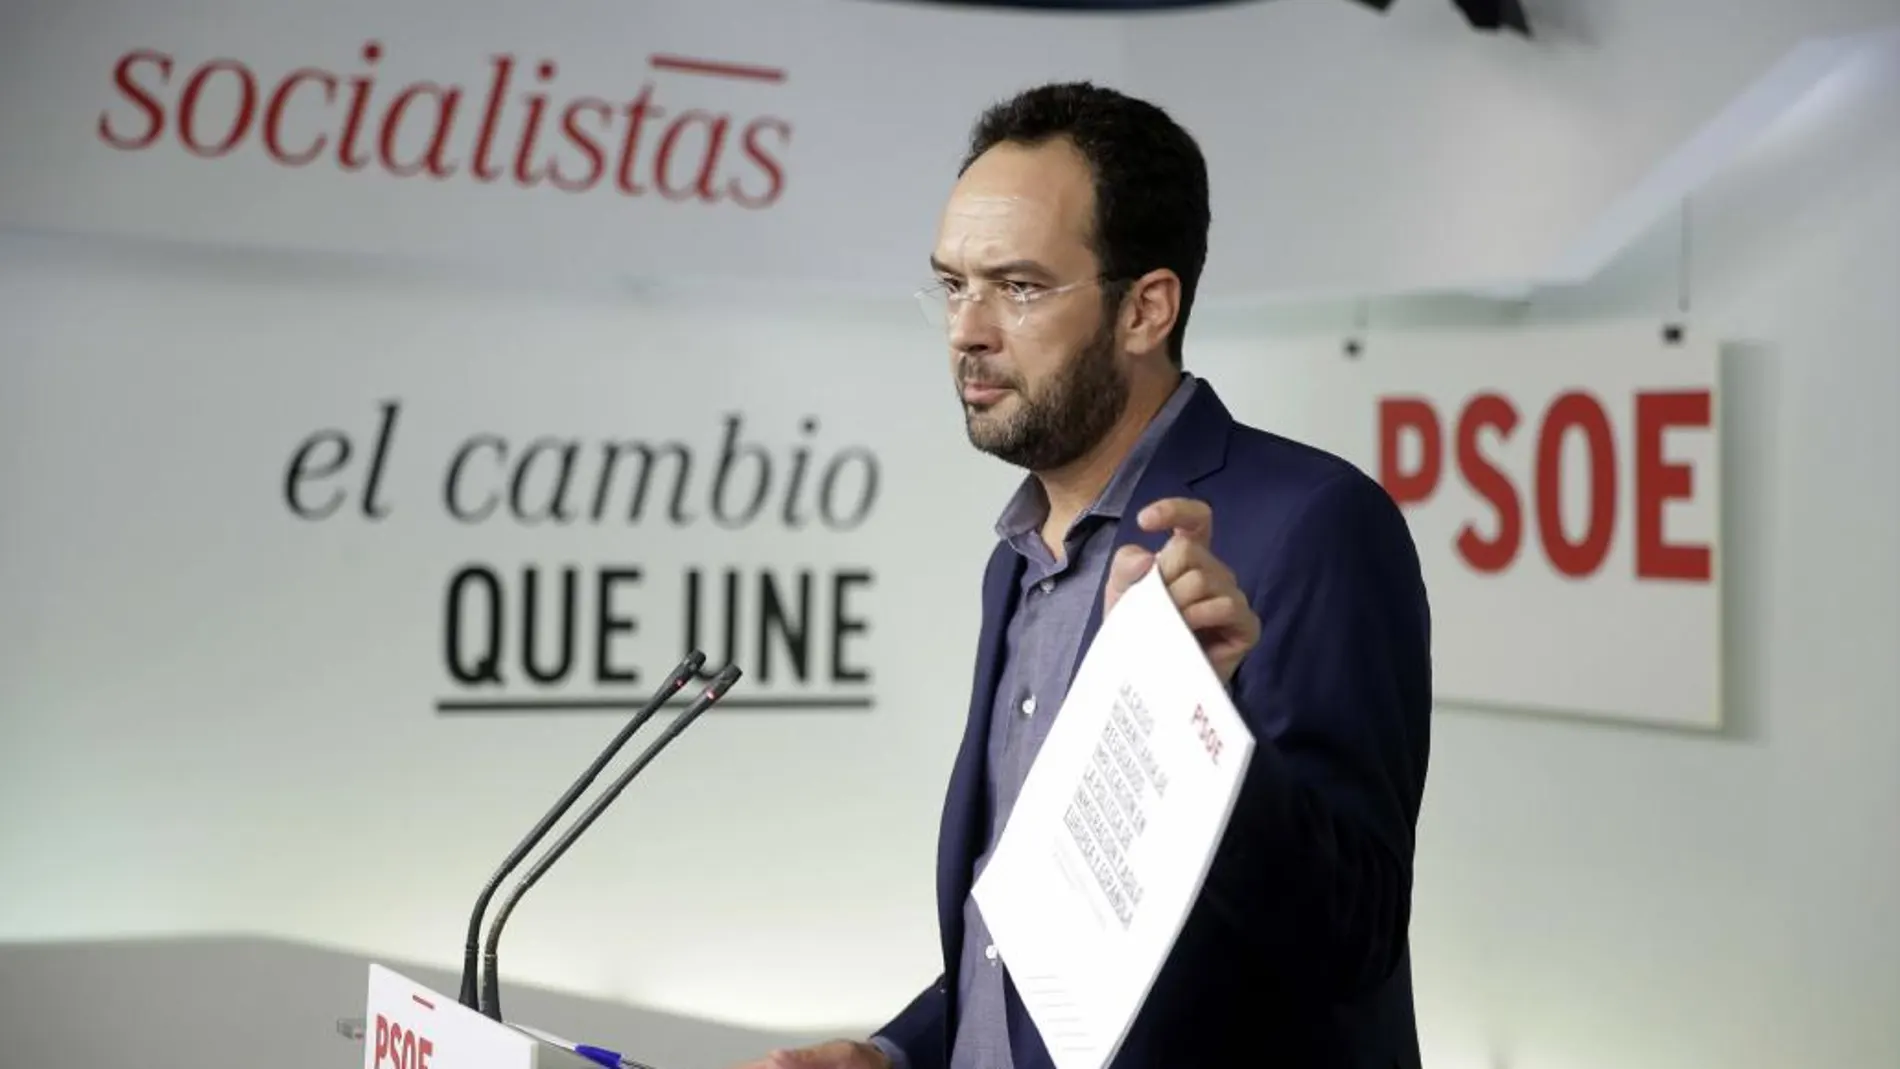 El portavoz del PSOE en el Congreso, Antonio Hernando, ha presentado hoy un documento del partido sobre la crisis humanitaria en la UE y el Mediterráneo.